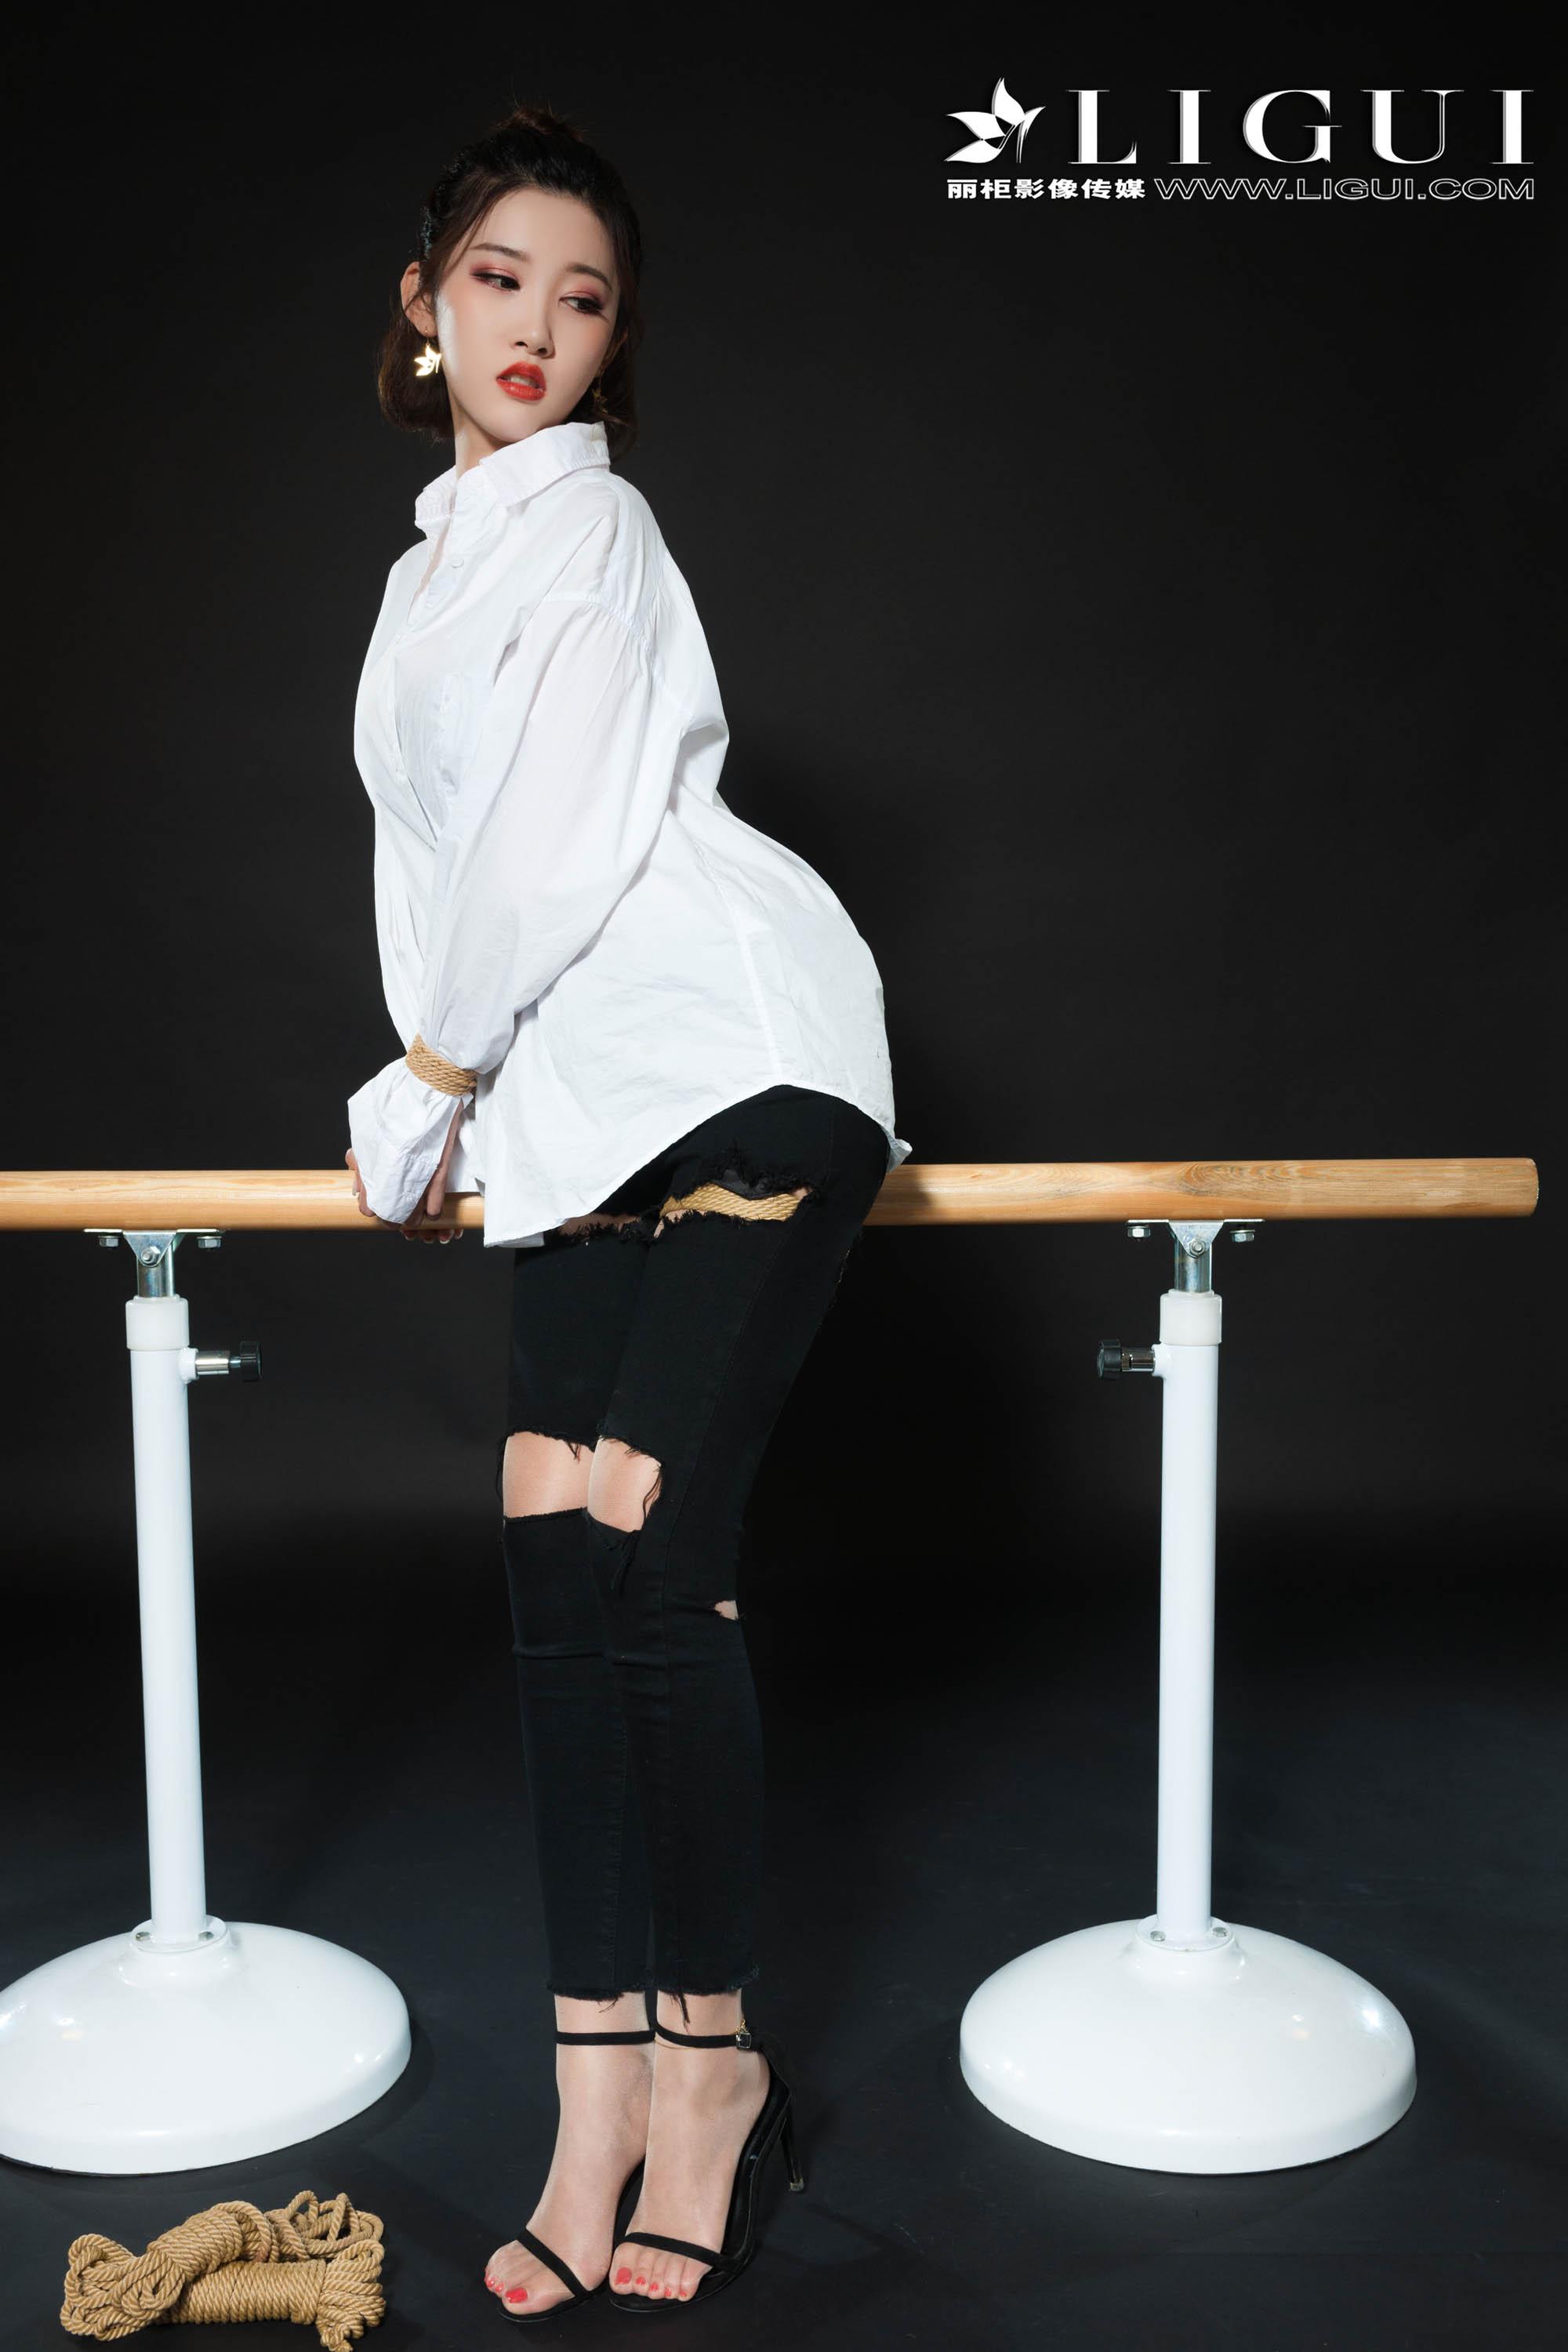 [Ligui丽柜会所]2018-11-09 被捆绑的 Model 筱筱 白色衬衫黑色内衣与黑色破洞紧身裤加肉色丝袜玉足性感私房写真集,